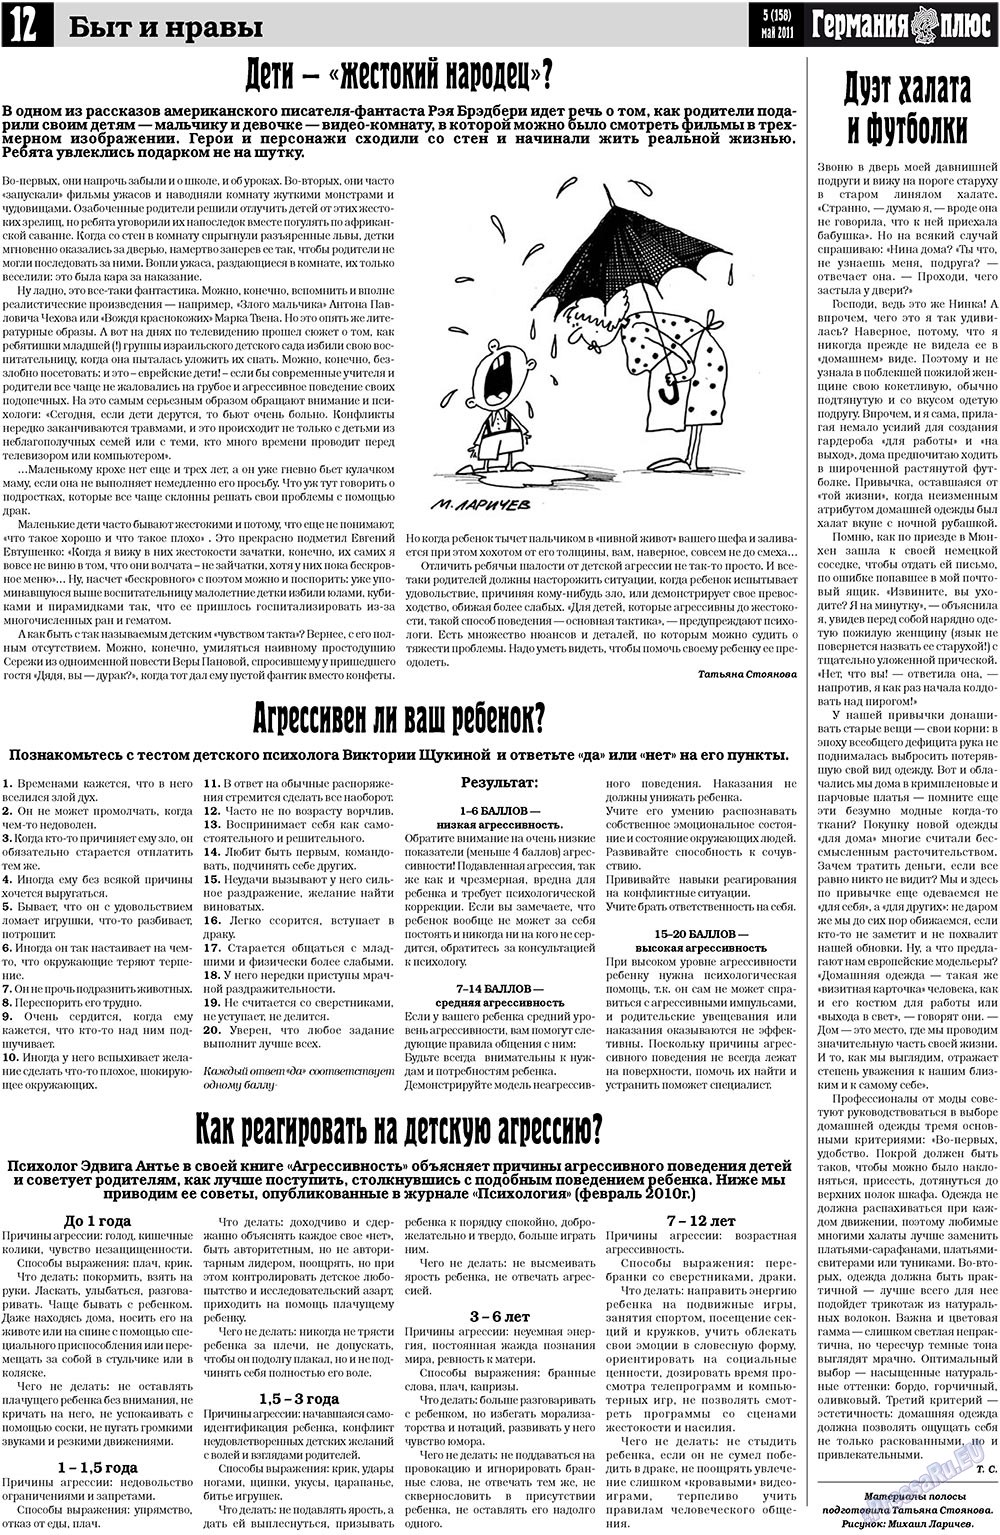 Германия плюс, газета. 2011 №5 стр.12